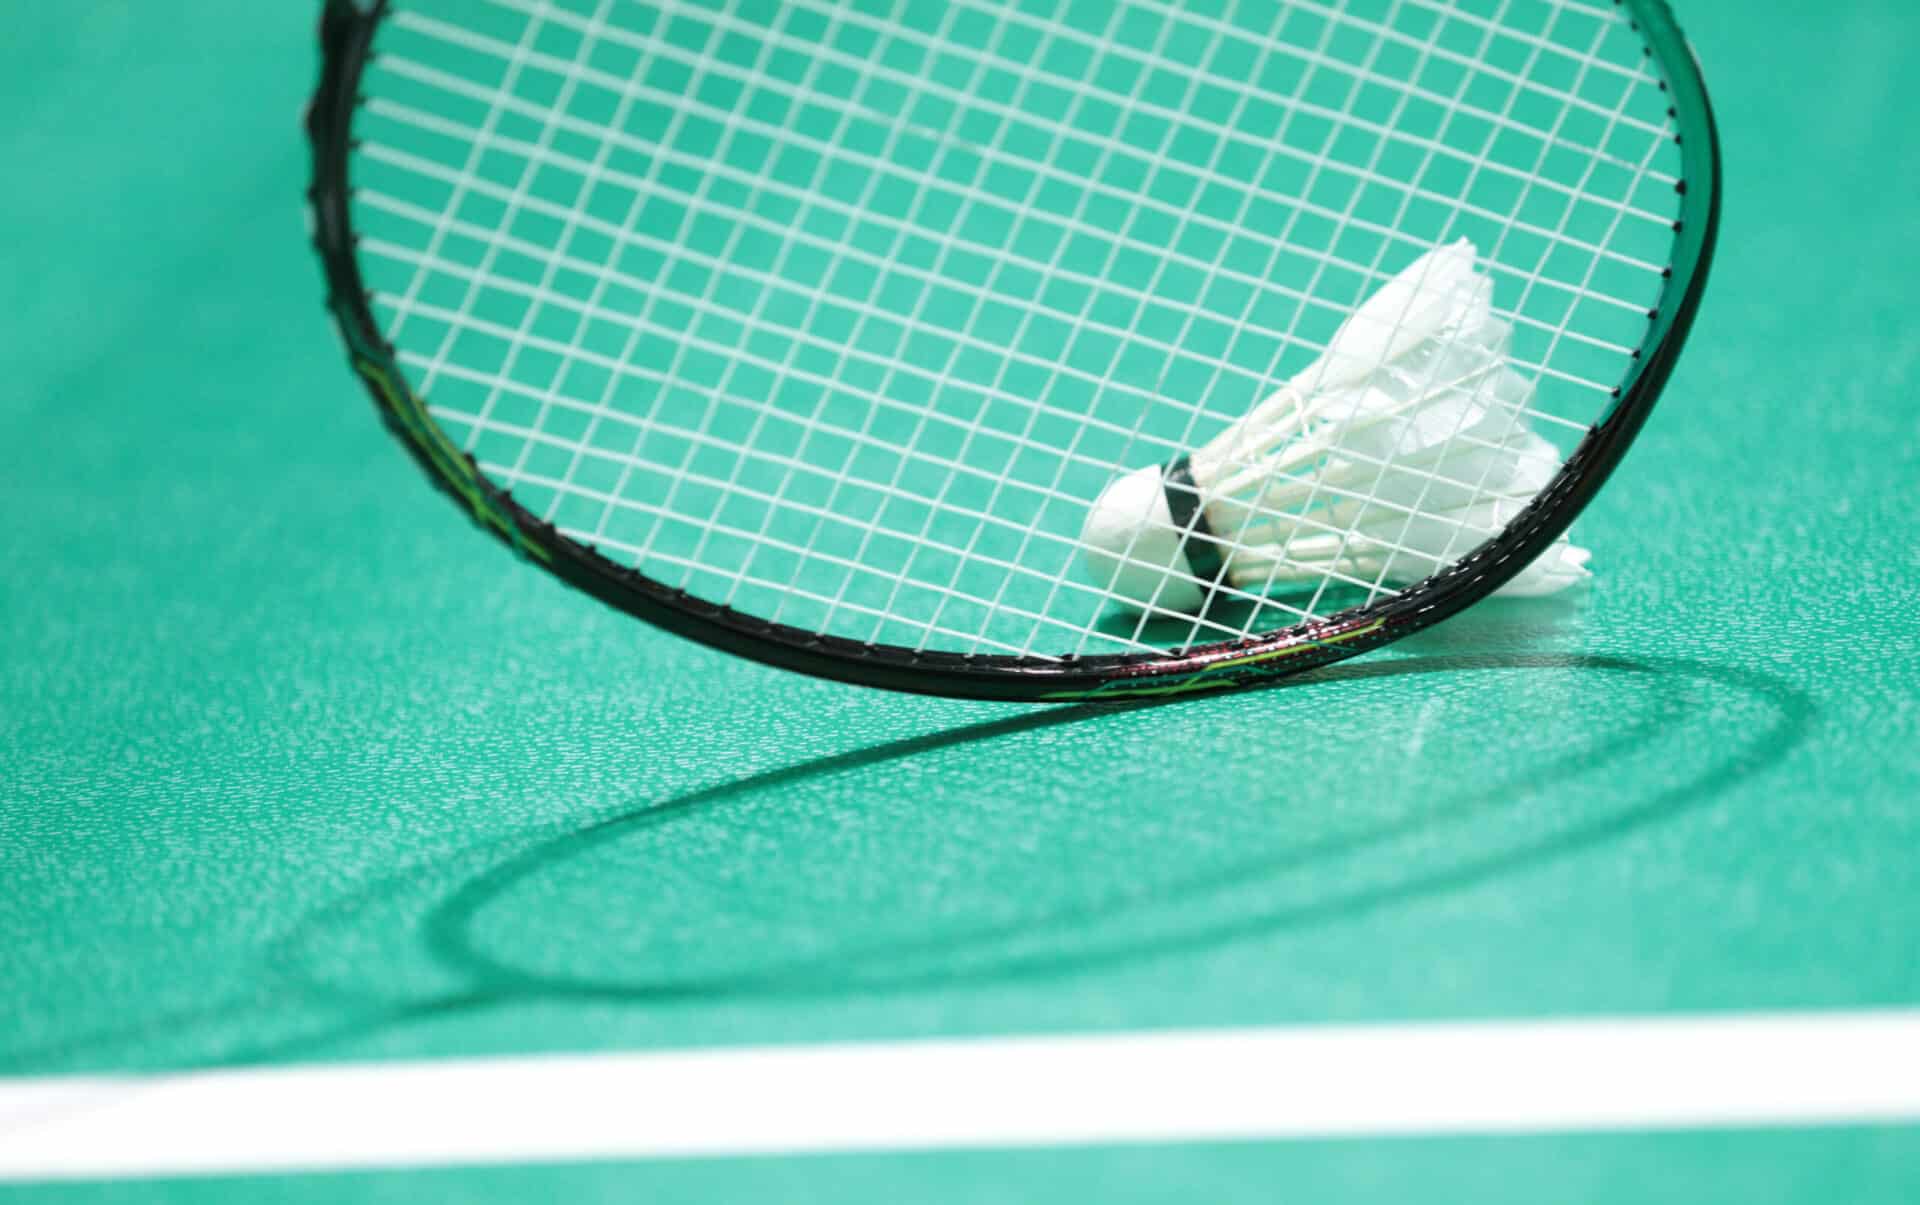 Badminton Danmark